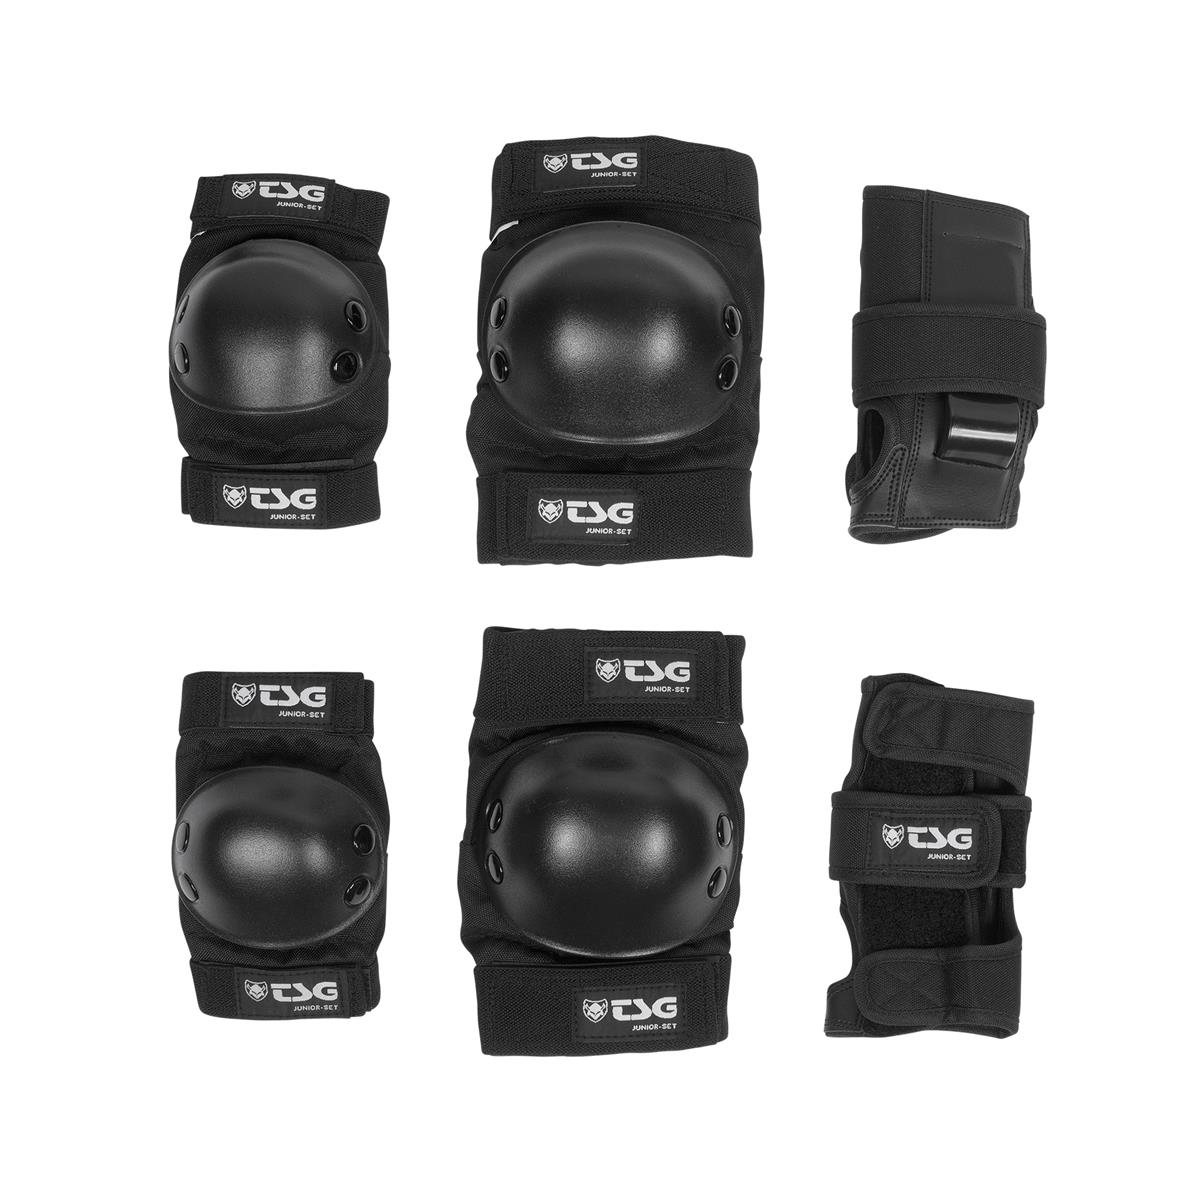 TSG Bimbo Kit Protezioni Junior-Set Black